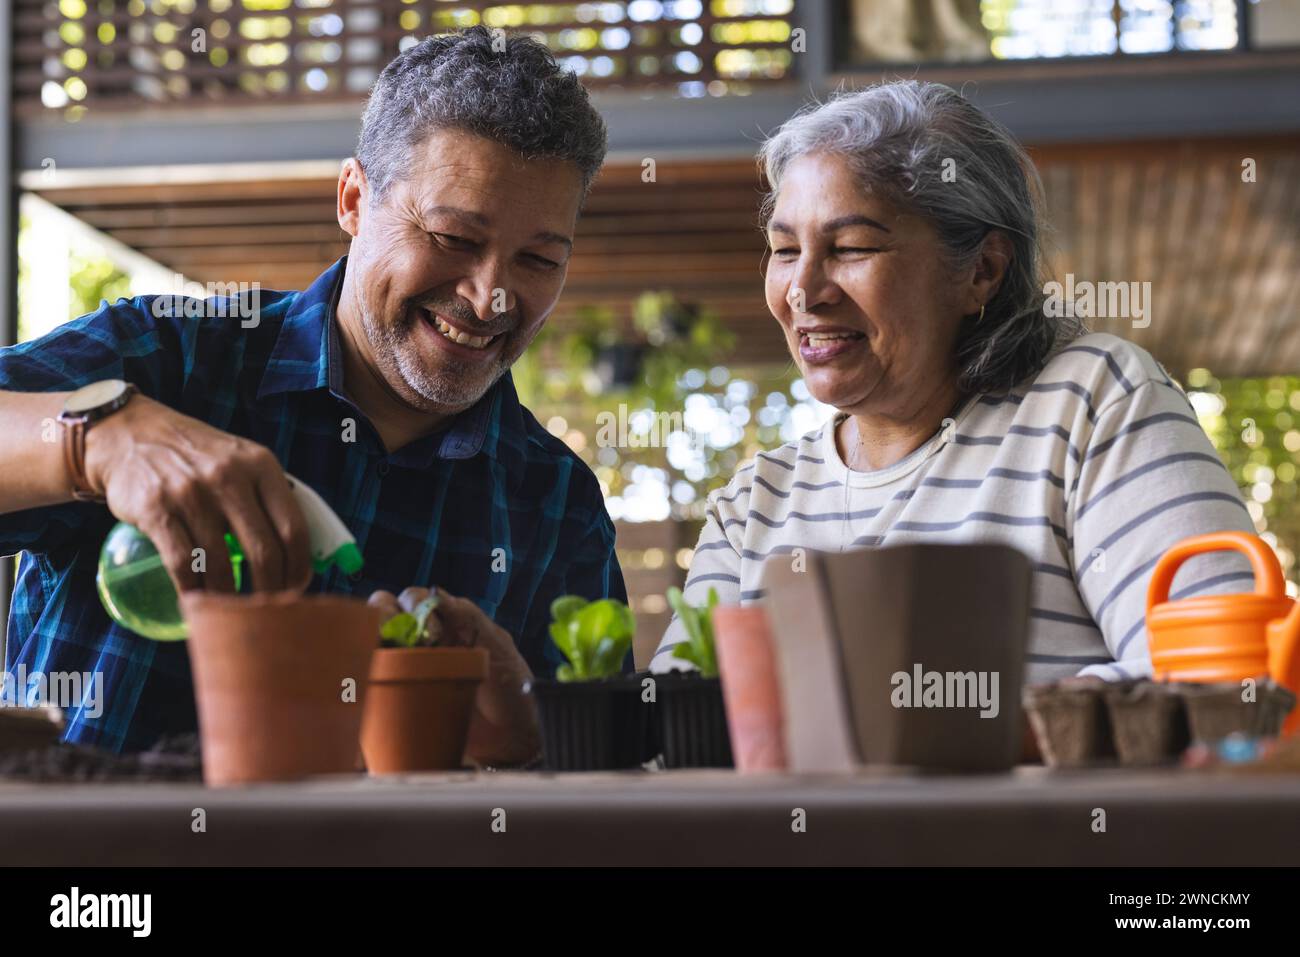 Ein hochrangiges Paar genießt es, gemeinsam im Garten zu arbeiten und einen freudigen Moment zu teilen Stockfoto